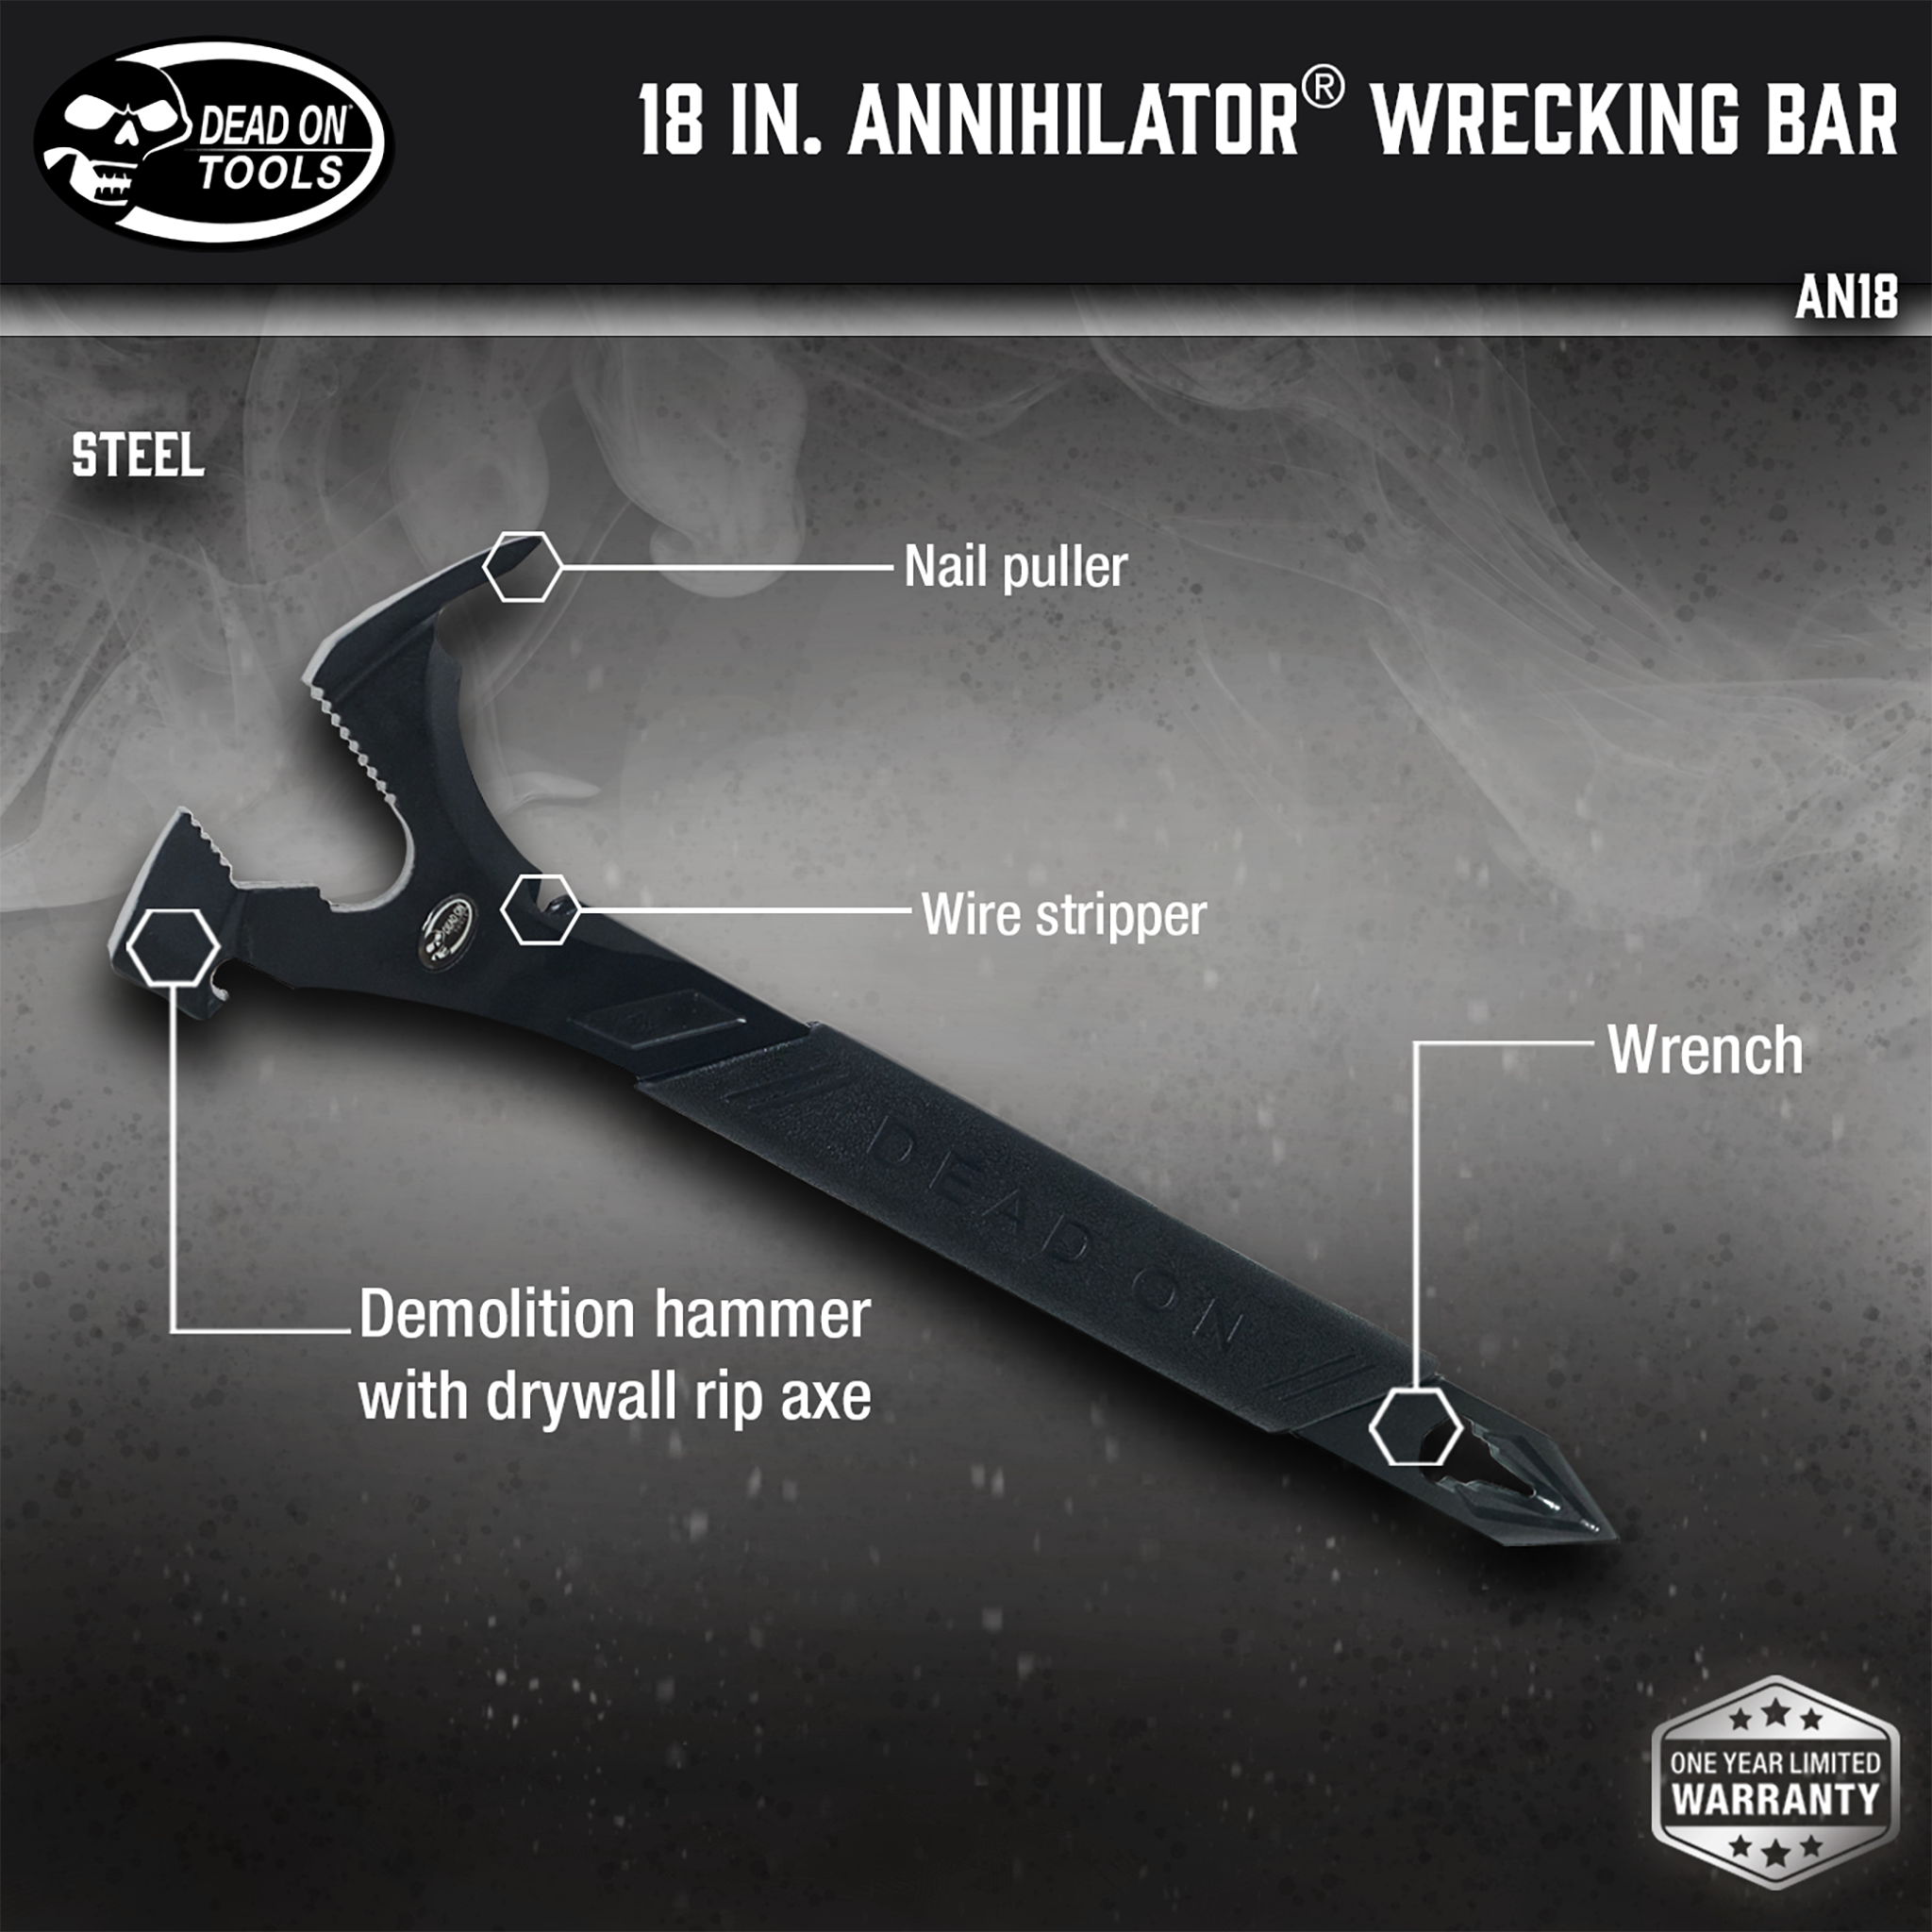 18 in. Annihilator Wrecking Bar